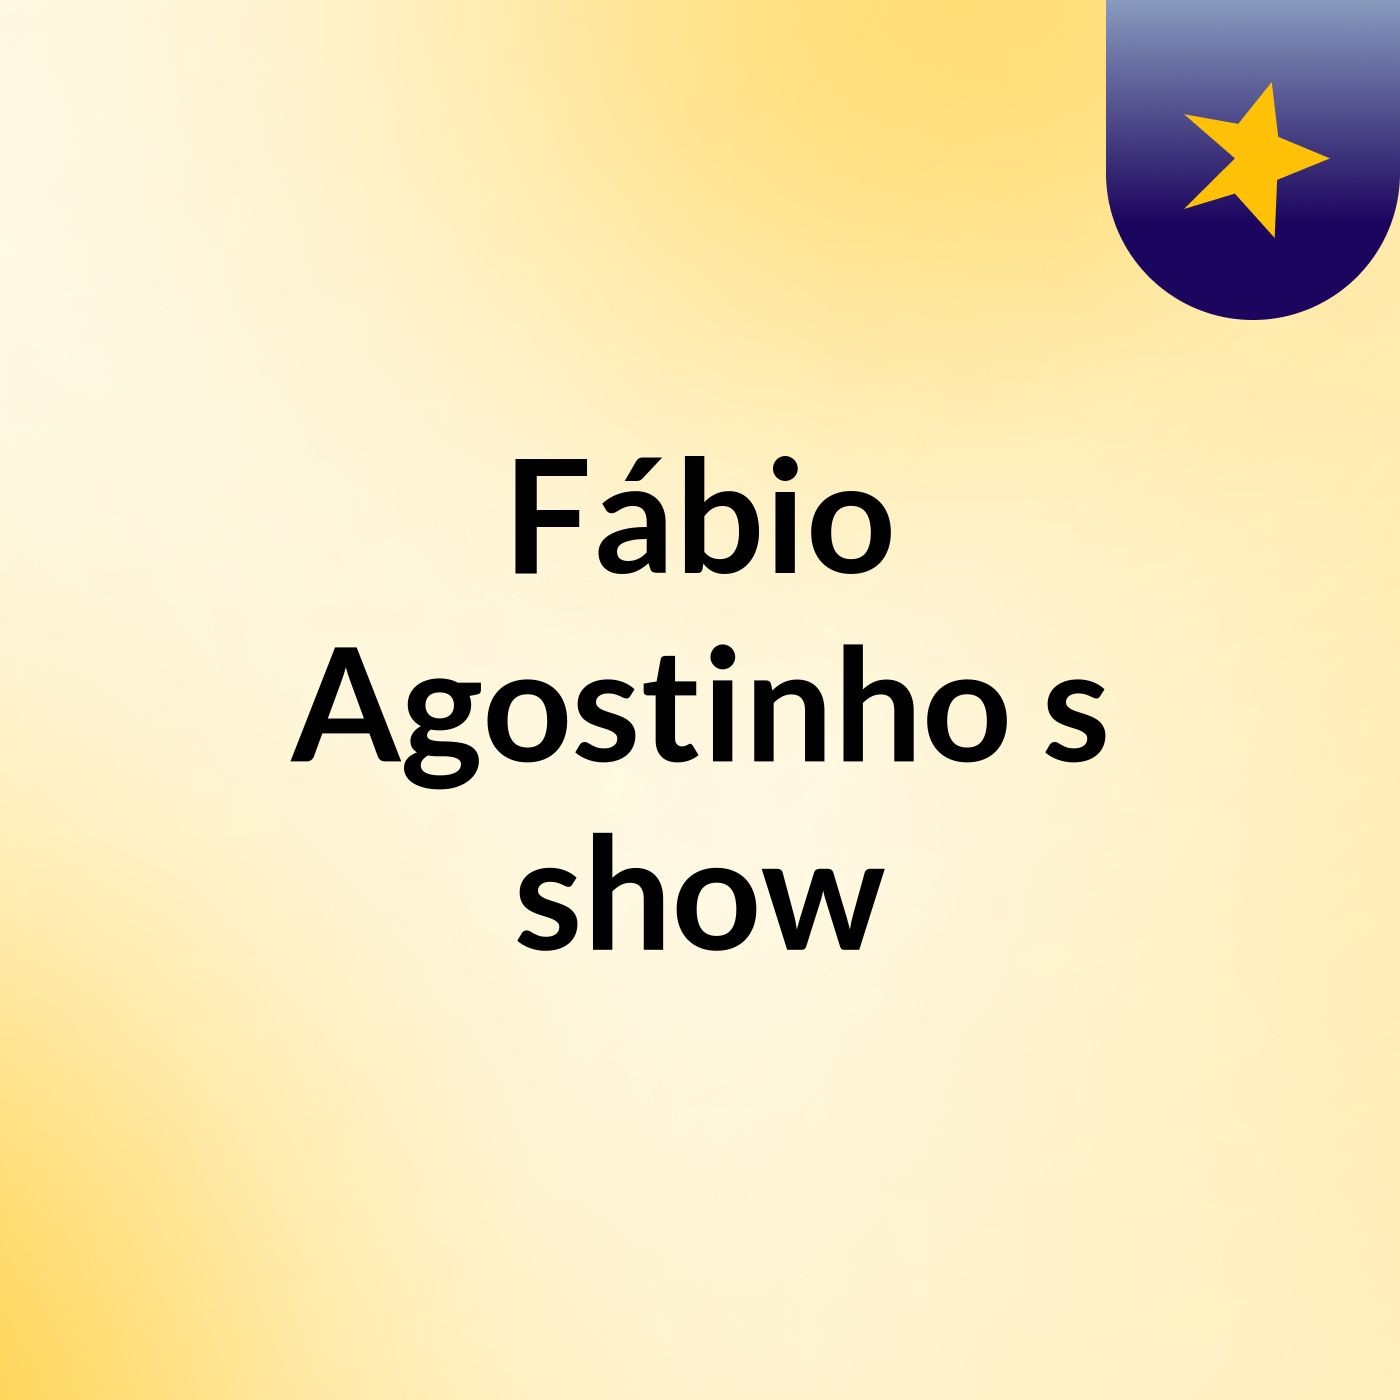 Fábio Agostinho's show